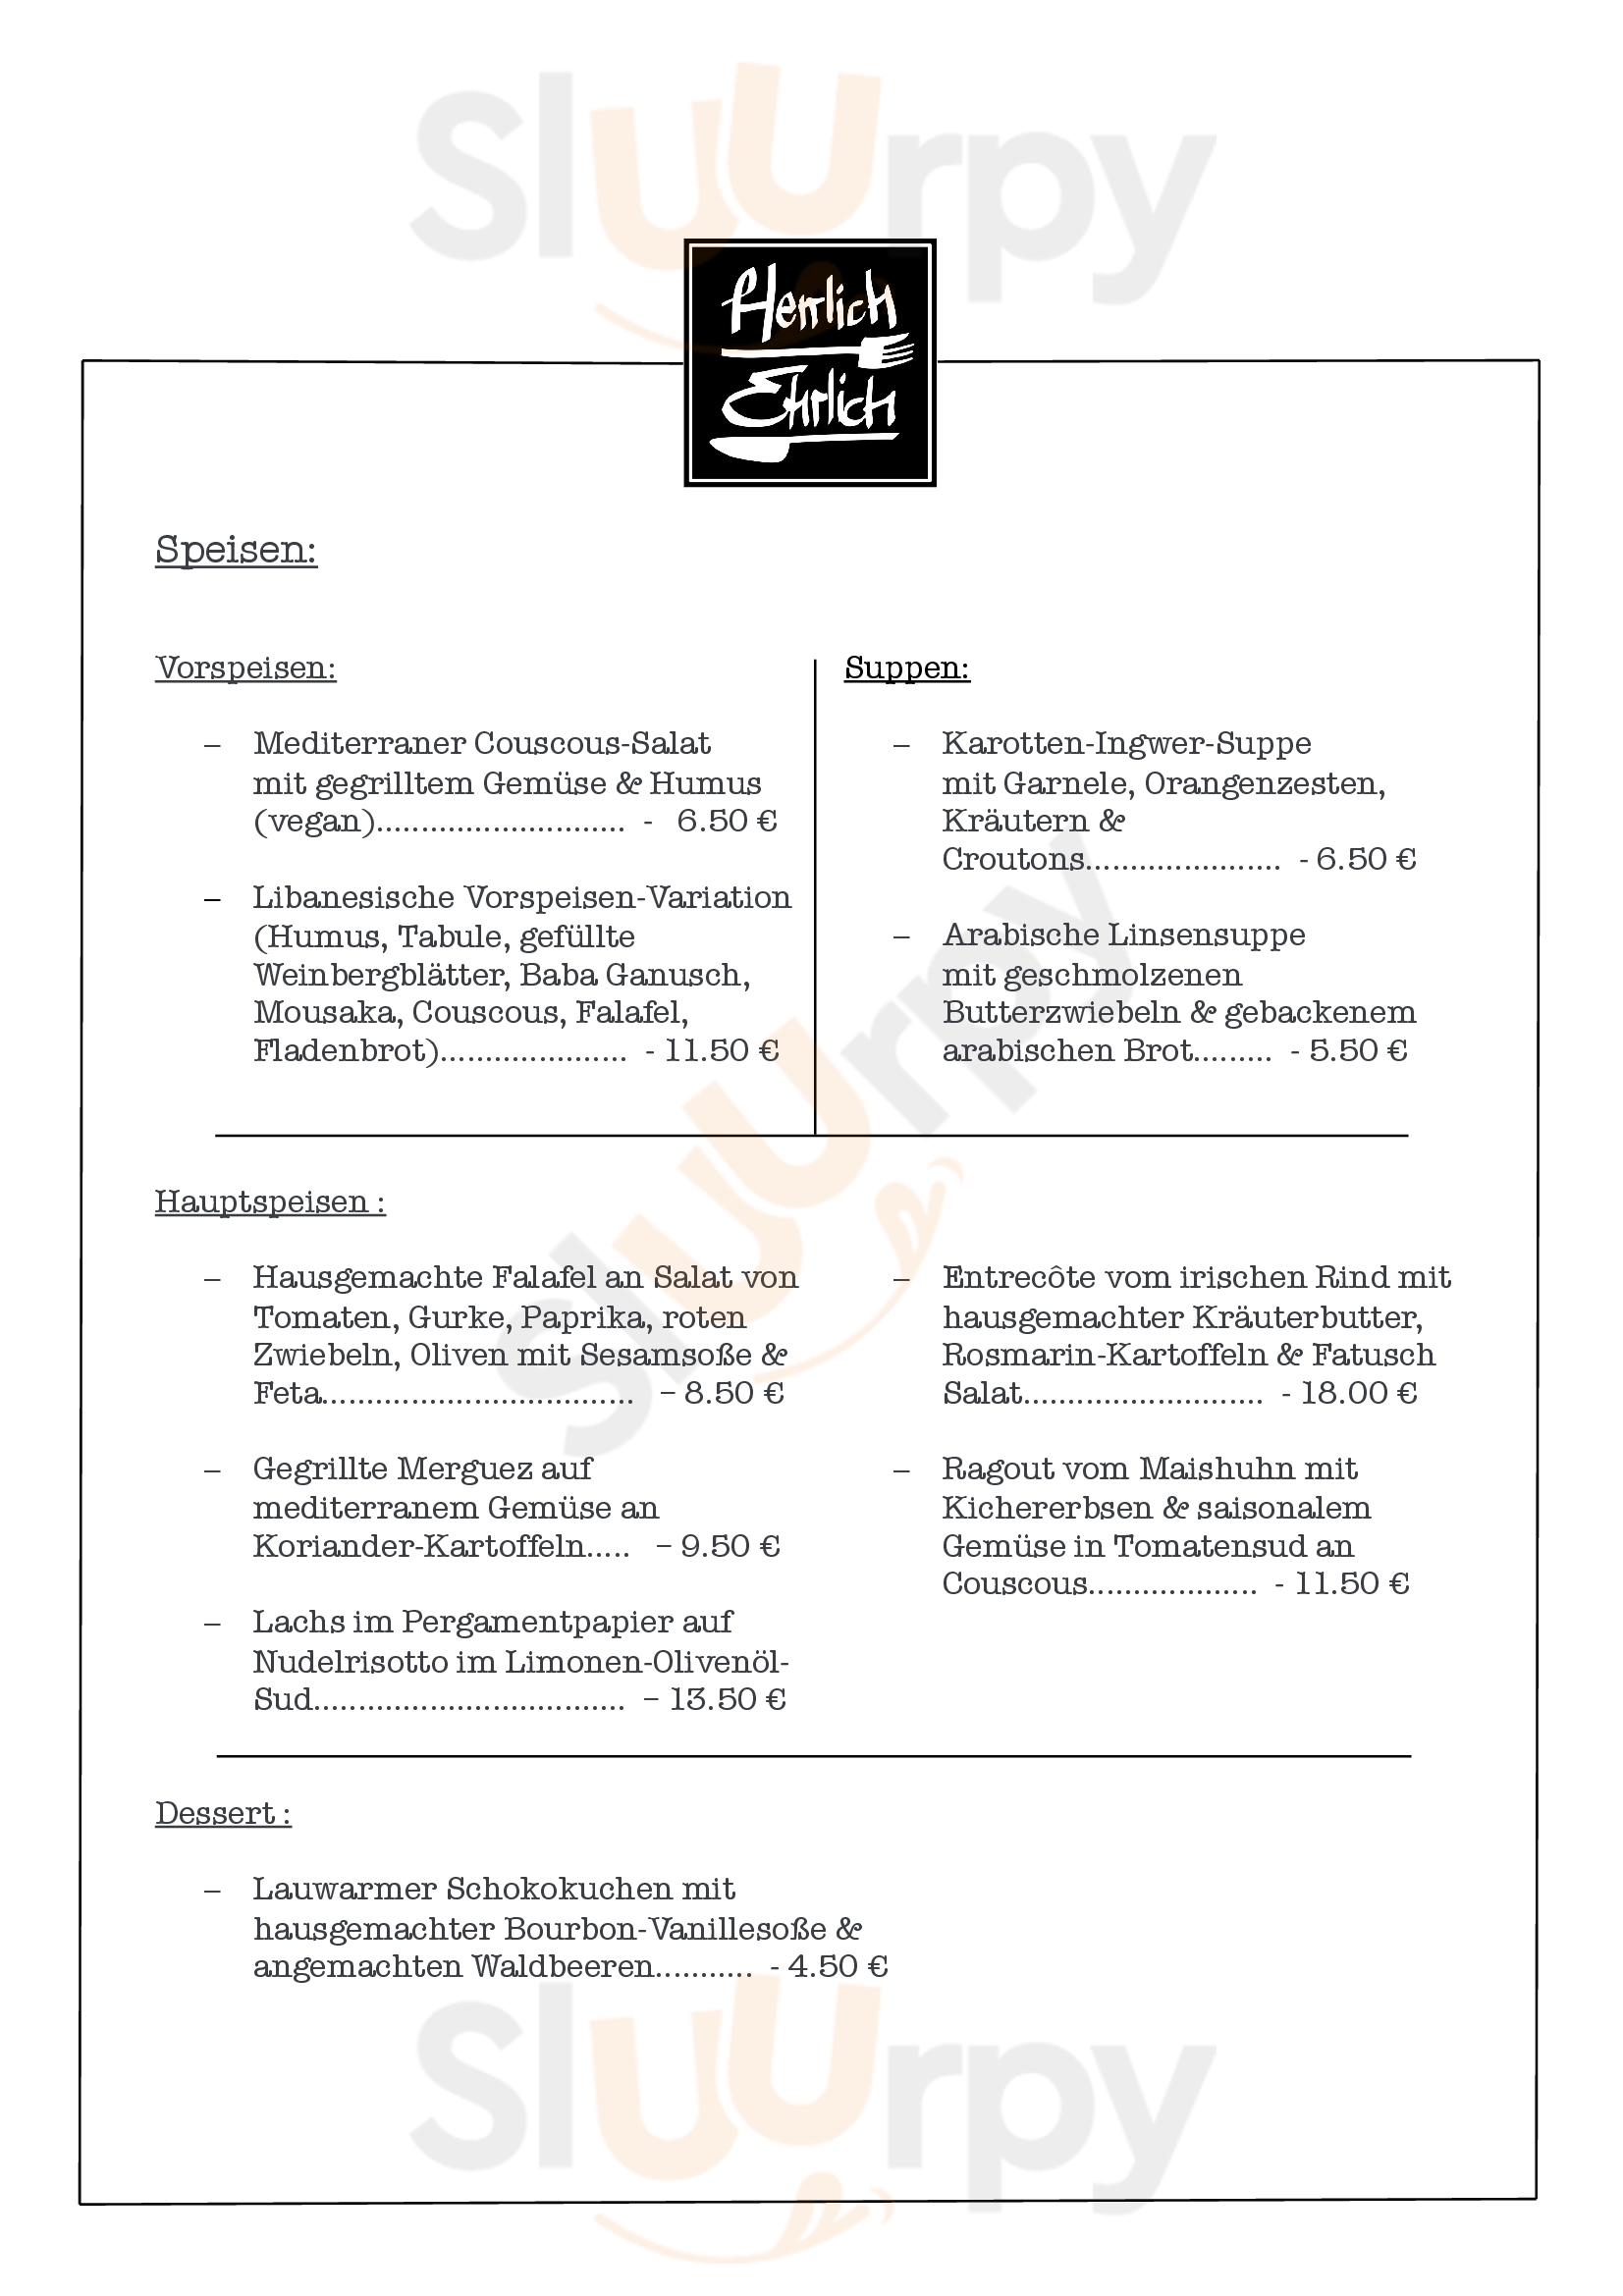 Herrlich Ehrlich | Restaurant | Bar | Cafe Trier Menu - 1